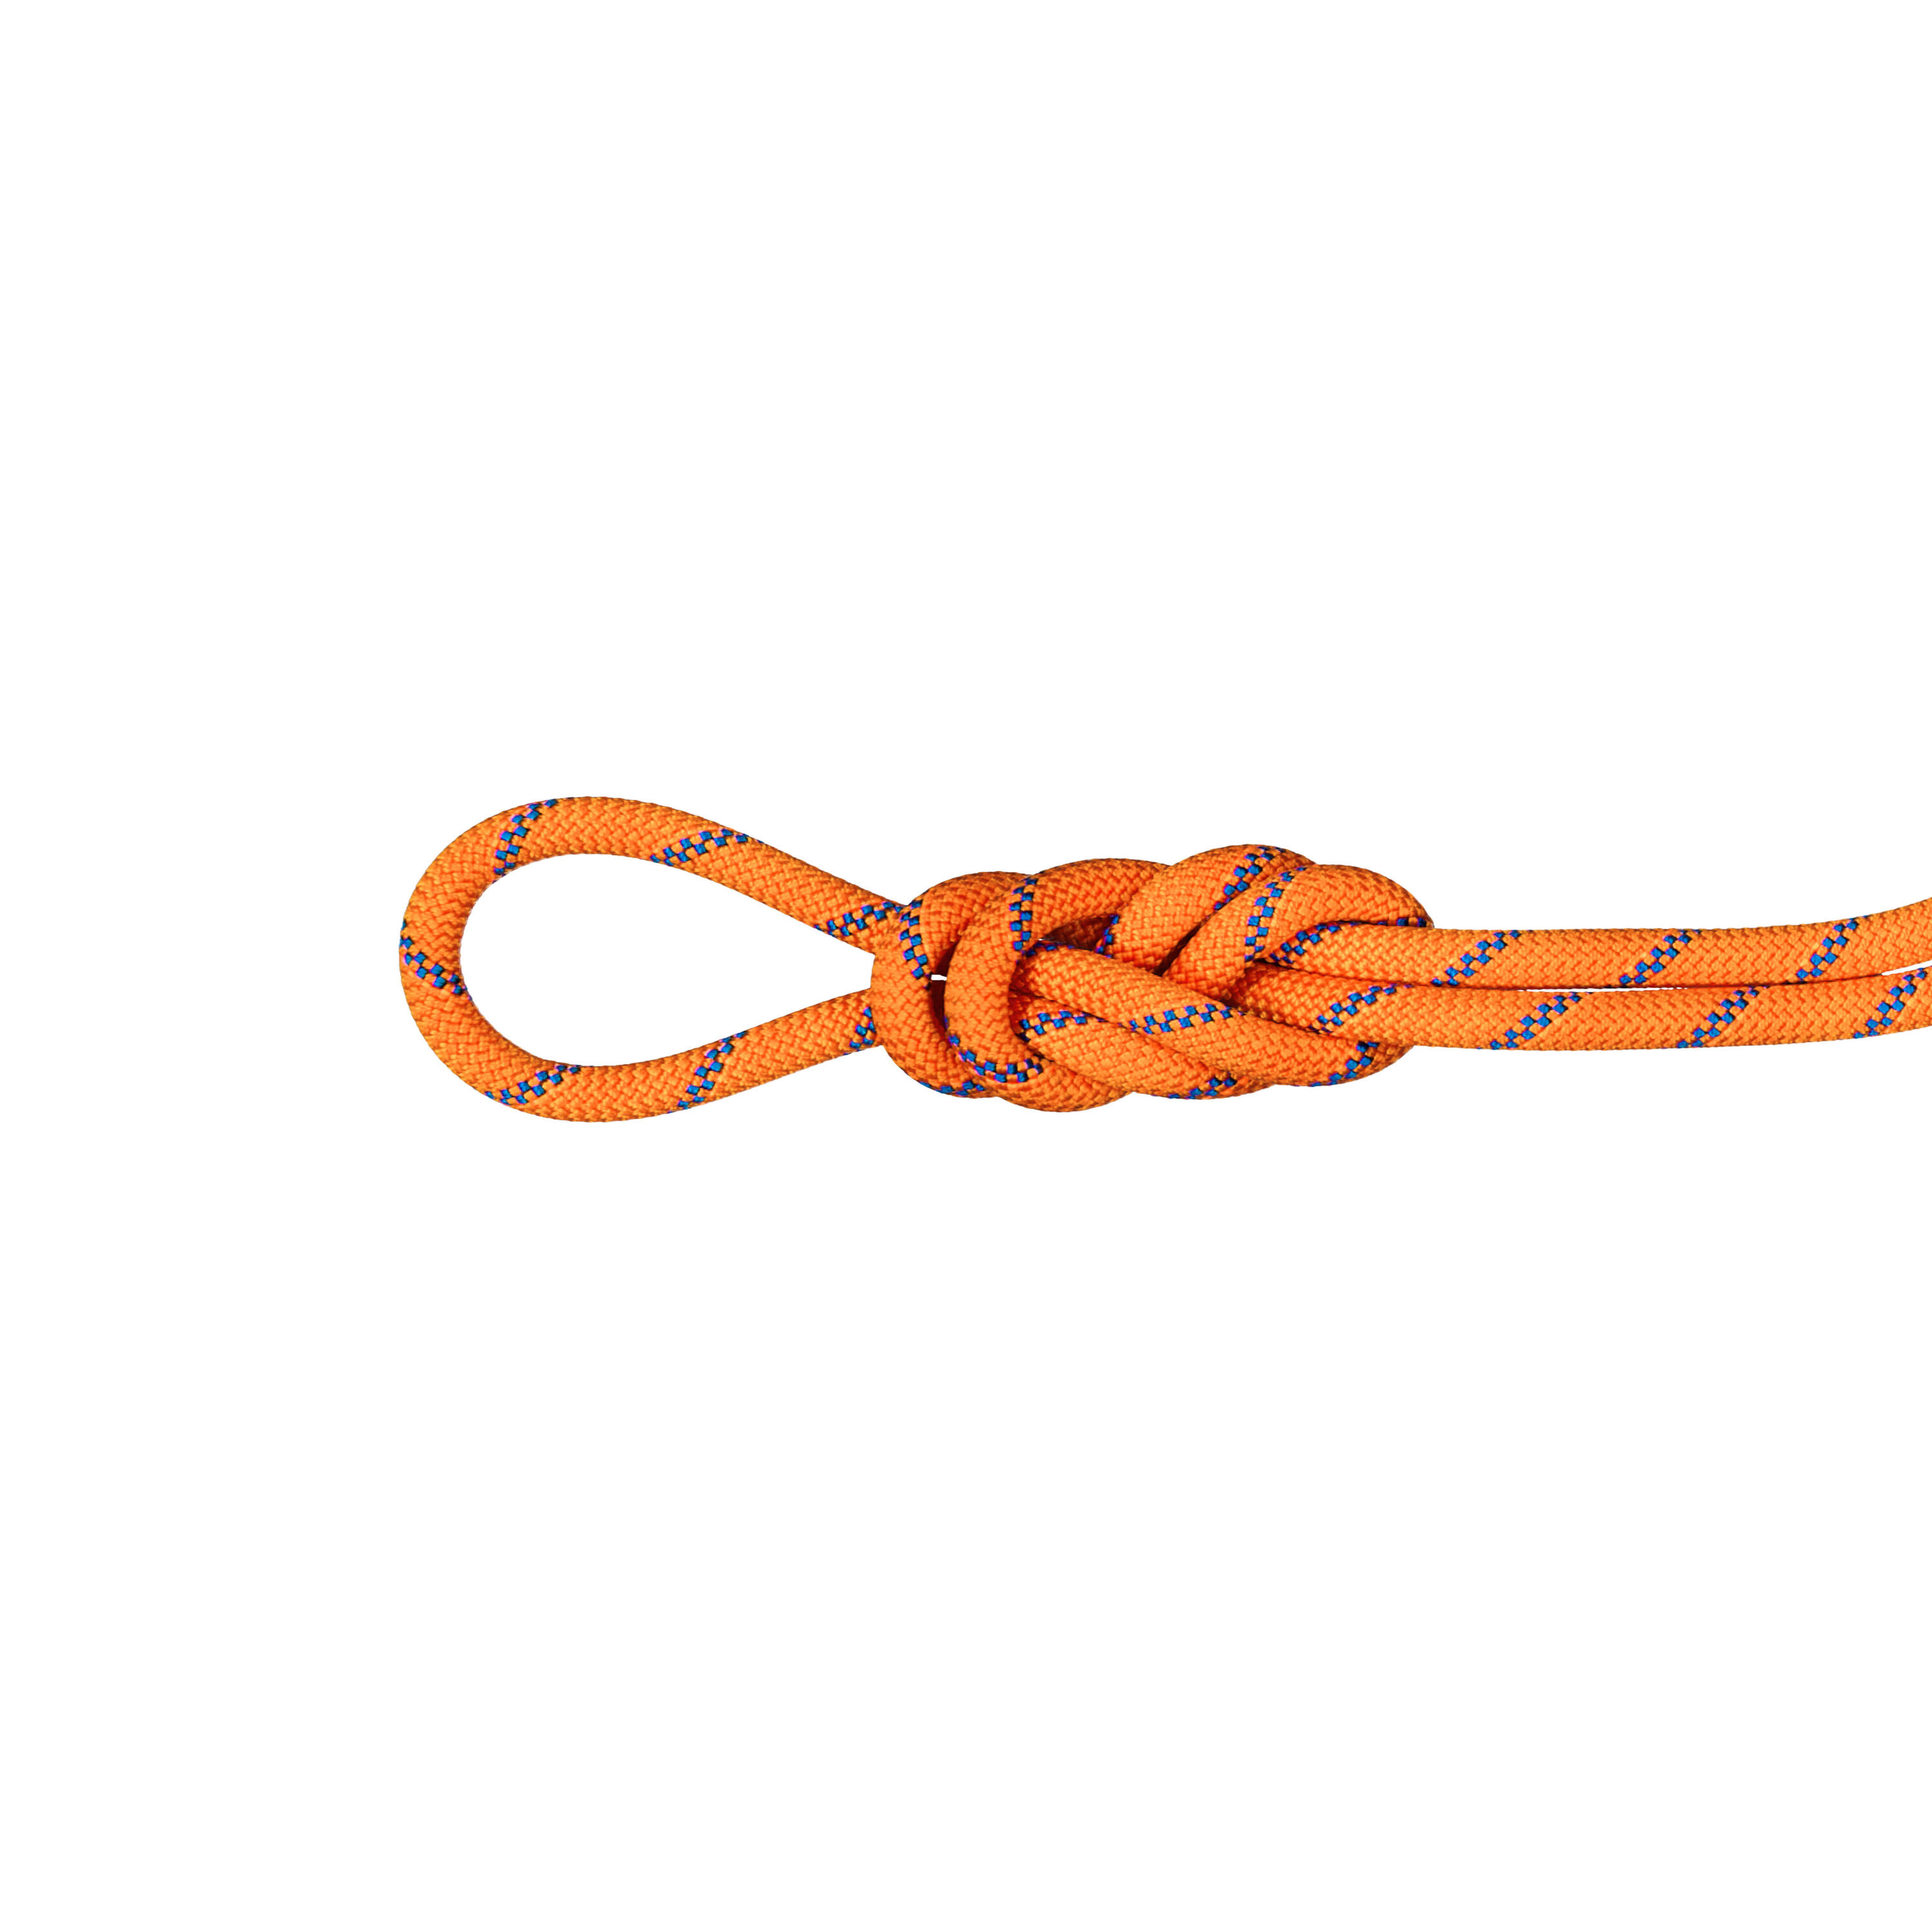 Alpine Sender Dry Triple-Rated Rope 9.0 mm x 60m - Orange 1/4